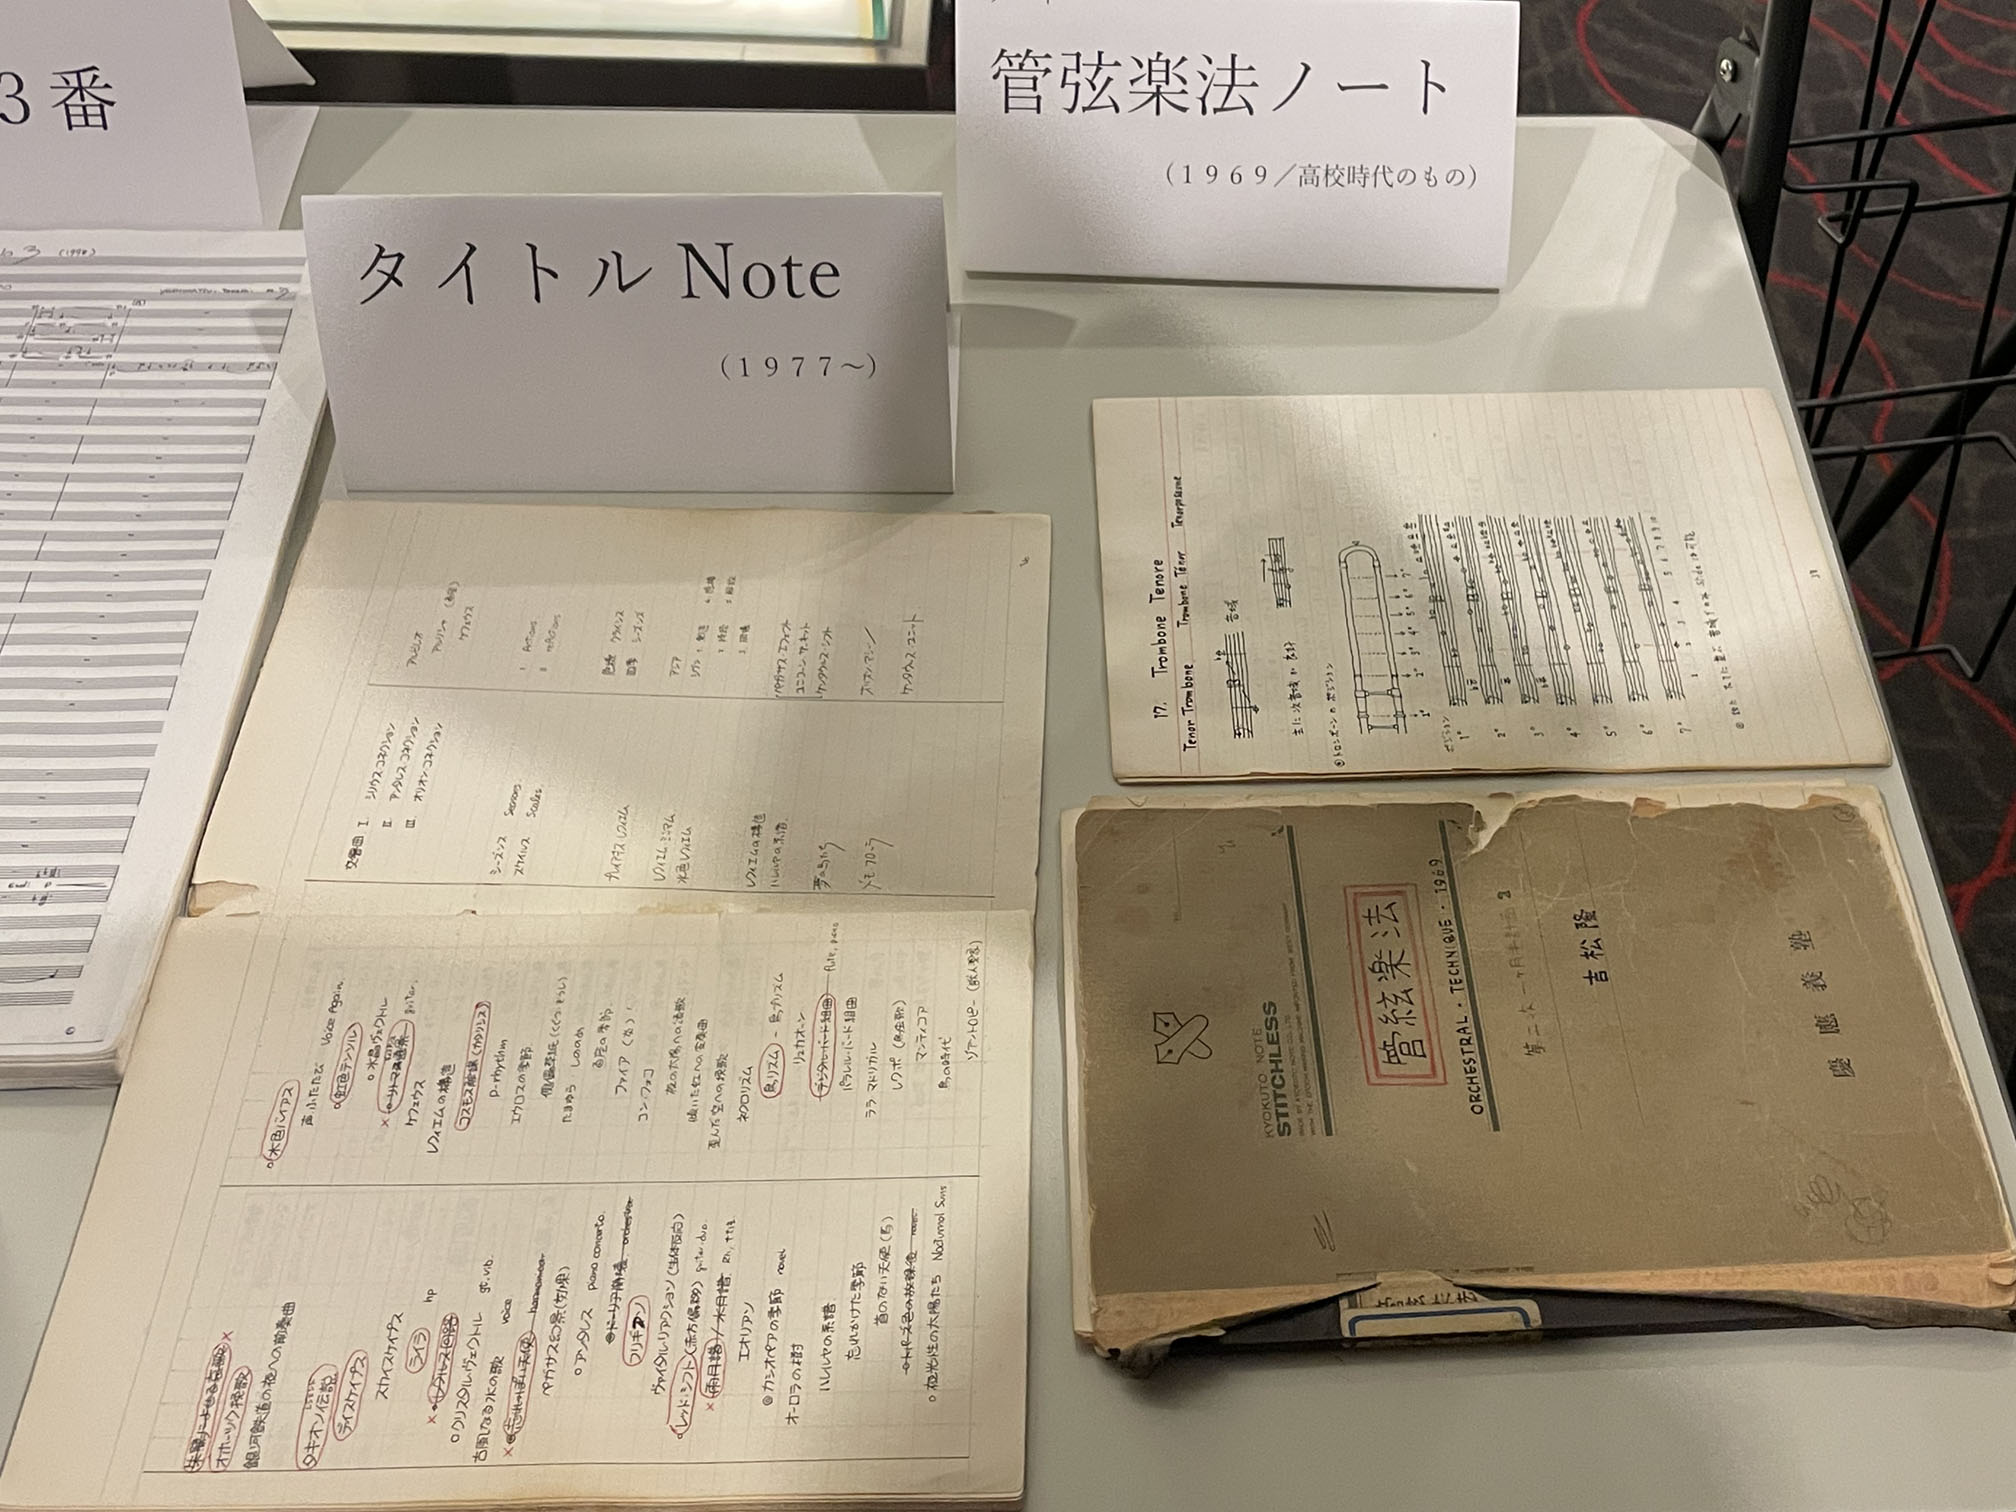 吉松隆のノート